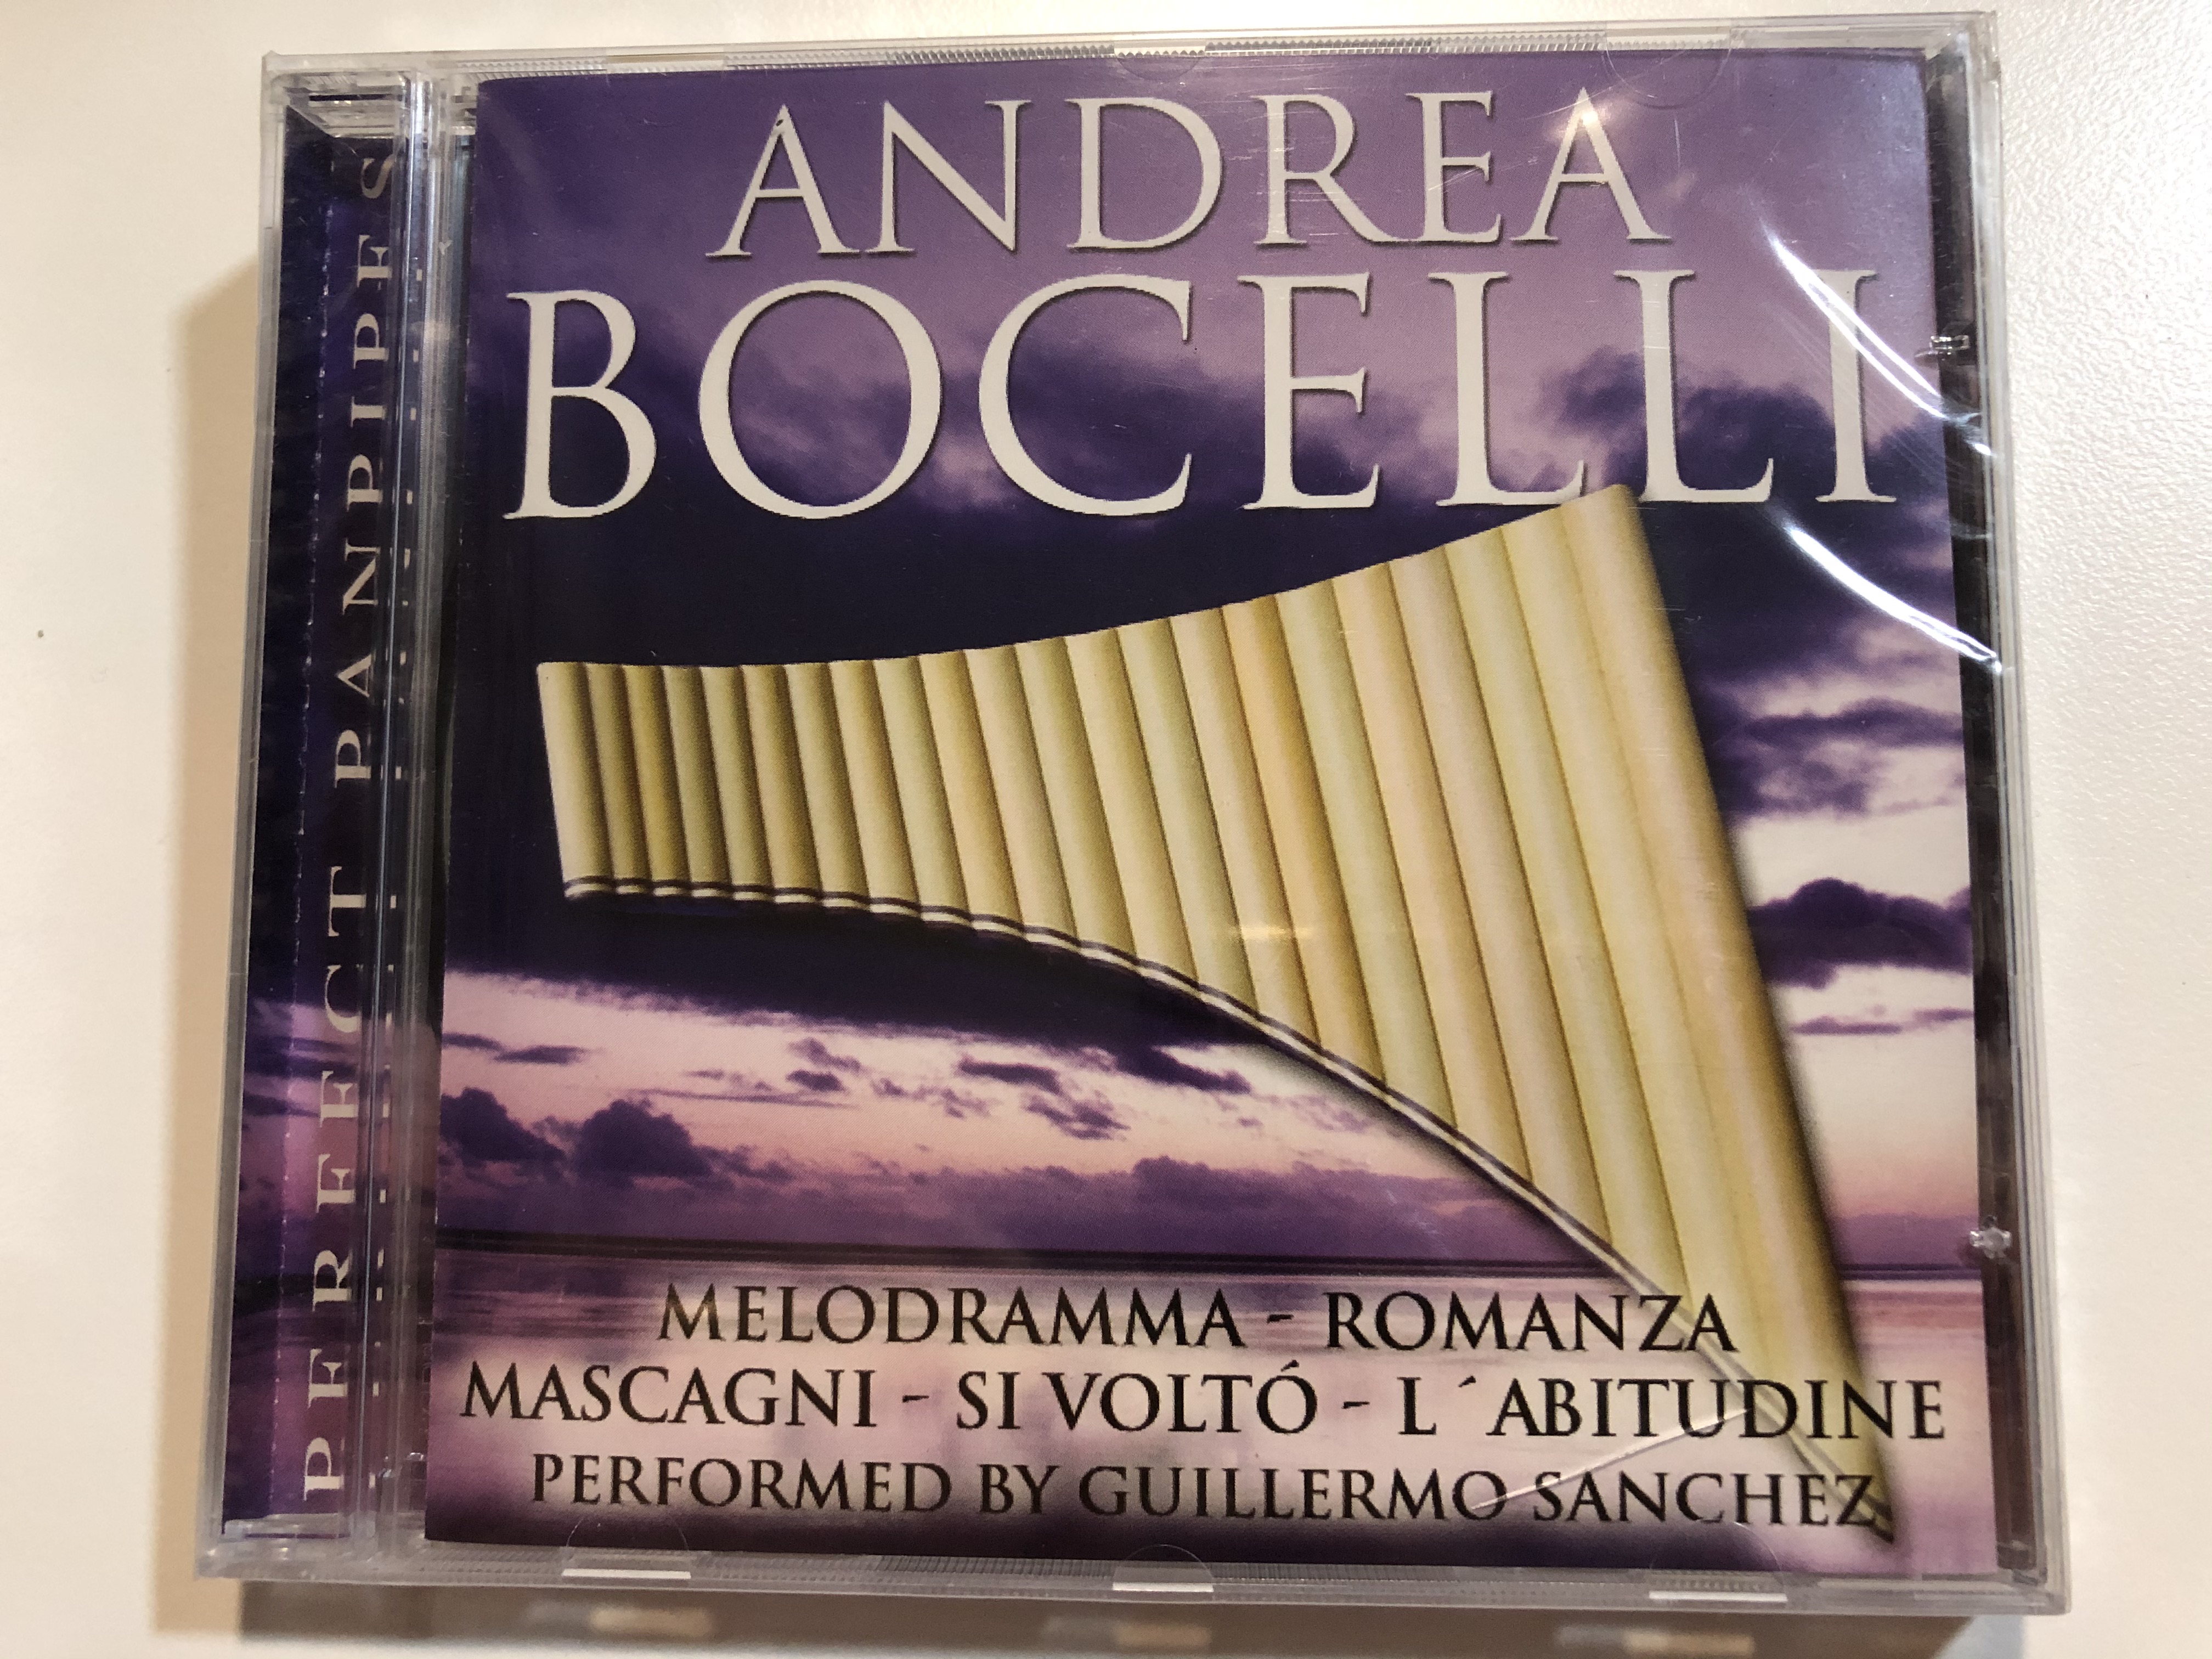 andrea-bocelli-melodramma-romanza-mascagni-si-volto-l-abitudine-performed-by-guillermo-sanchez-perfect-panpipes-audio-cd-2002-3120-2-1-.jpg